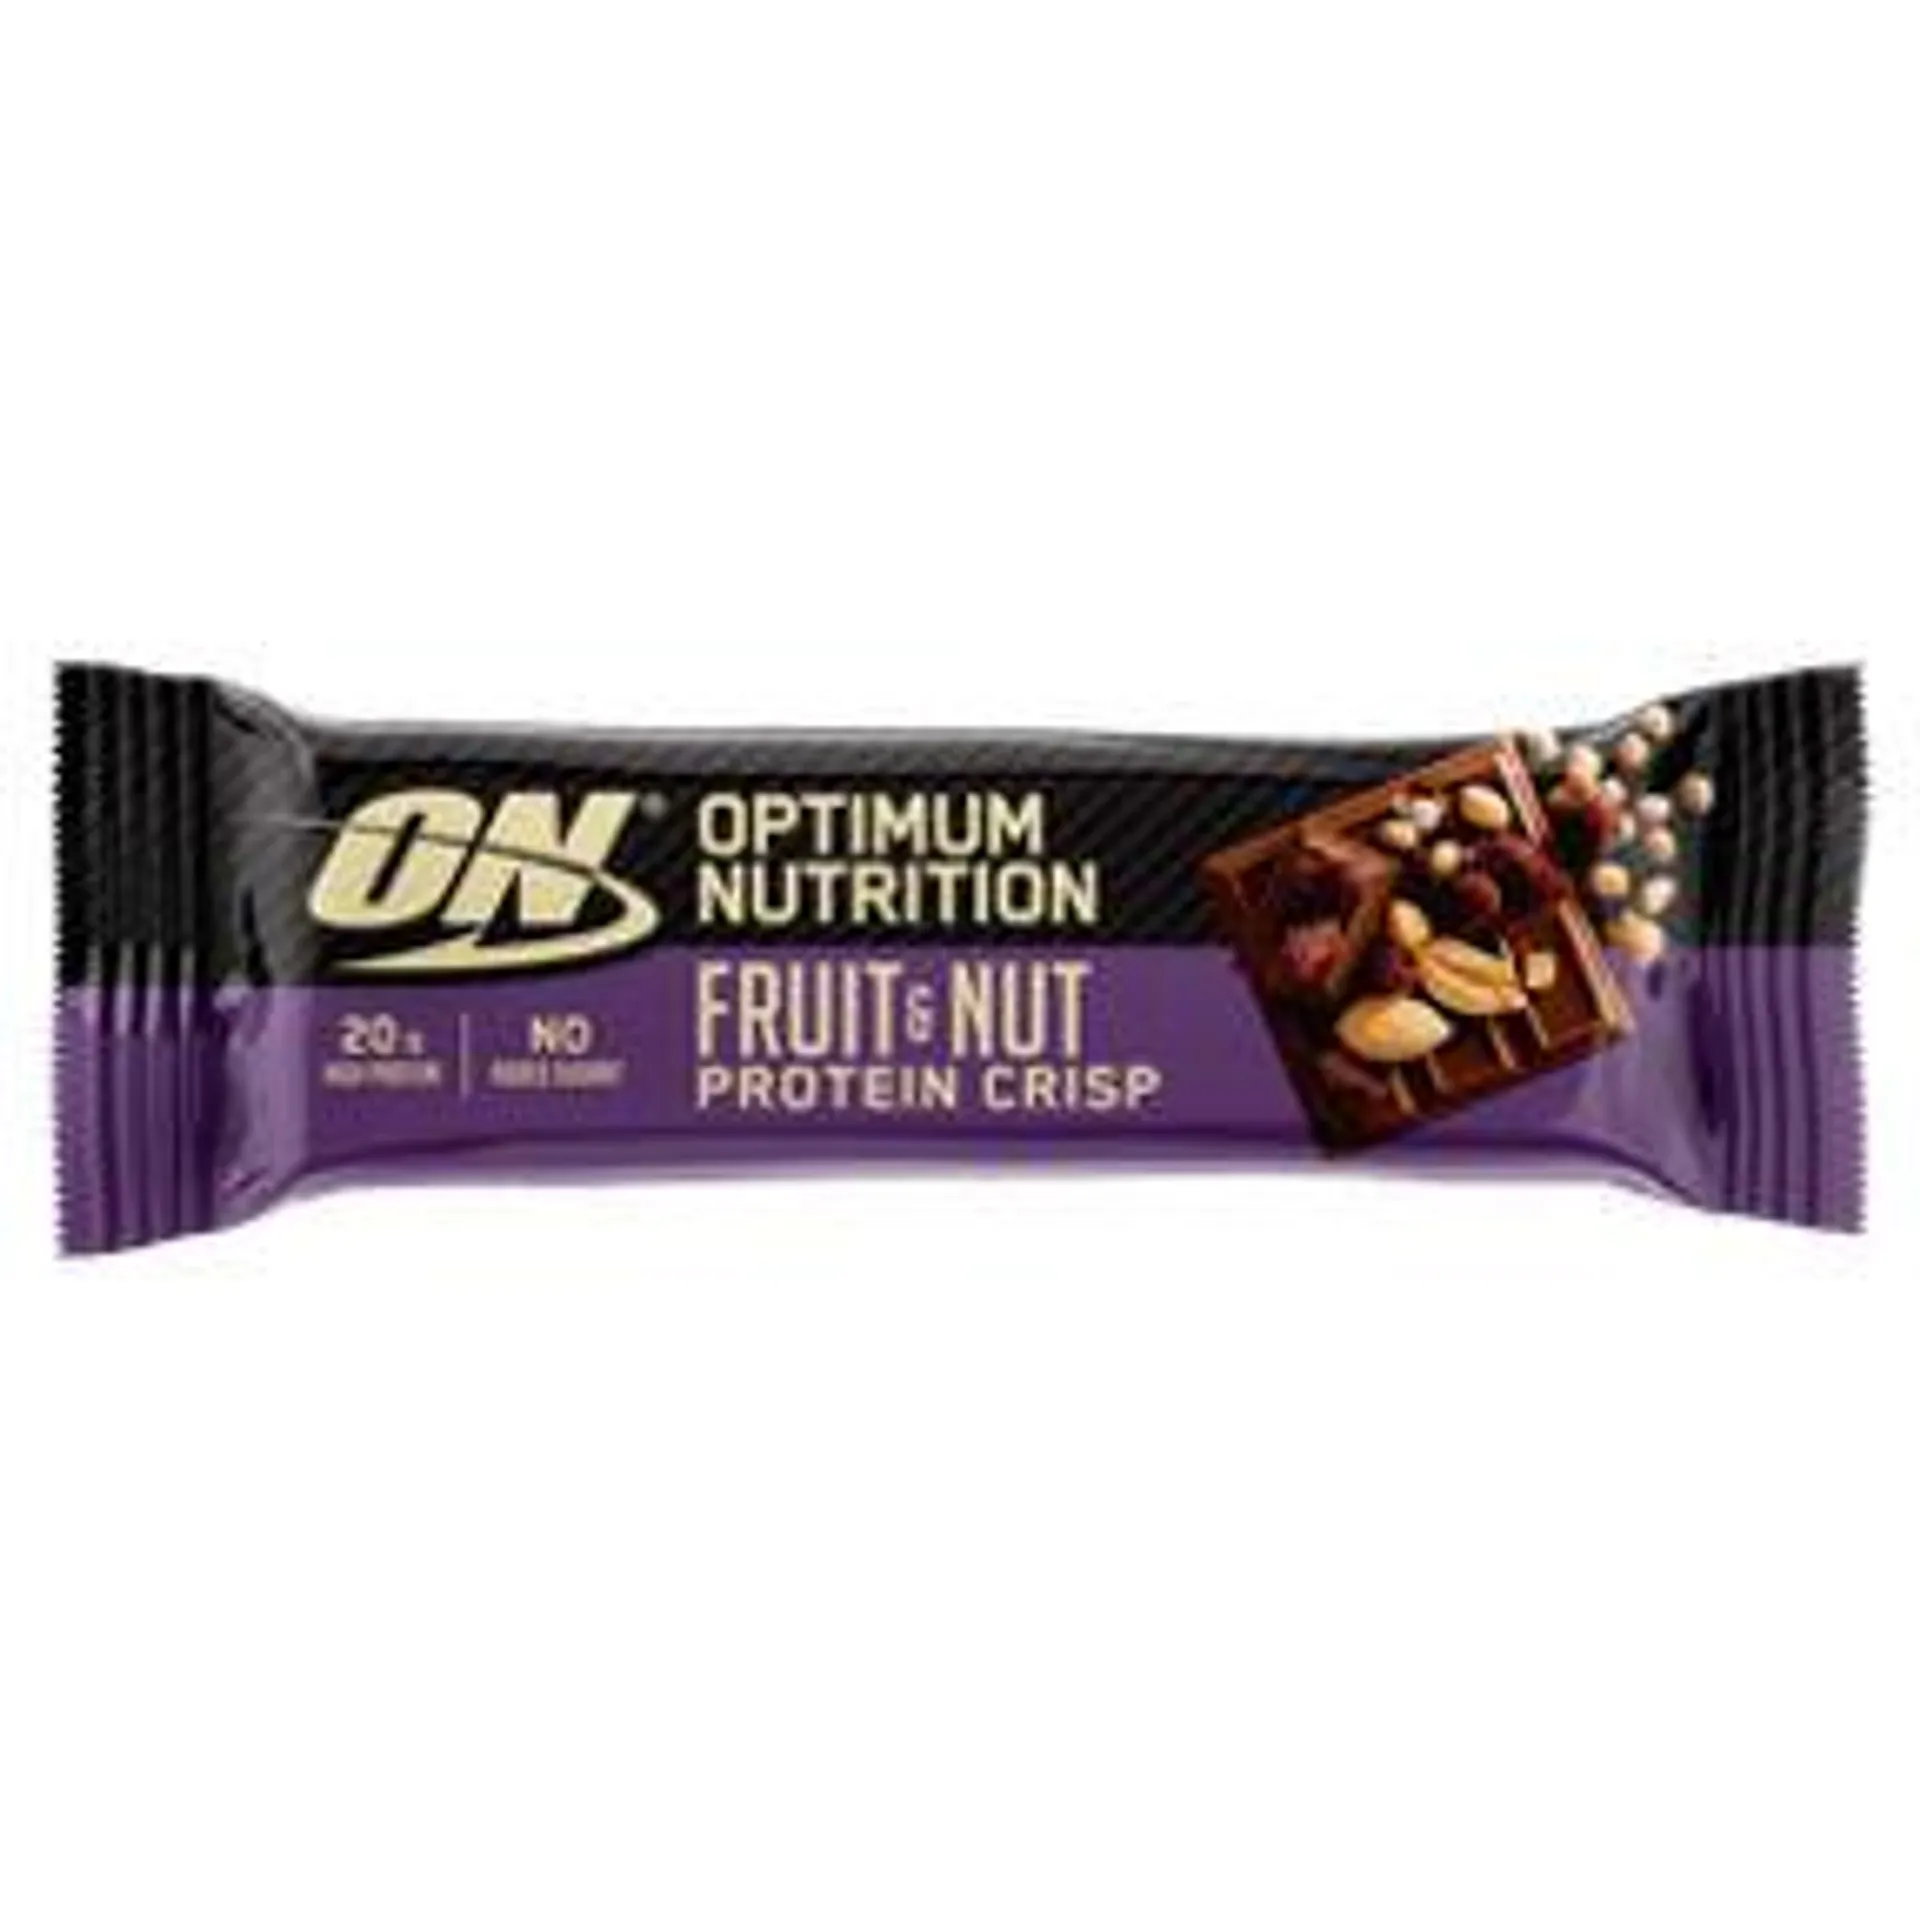 Optimum Nutrition Optimum Nutrition Fruit & Nut Protein Crisp